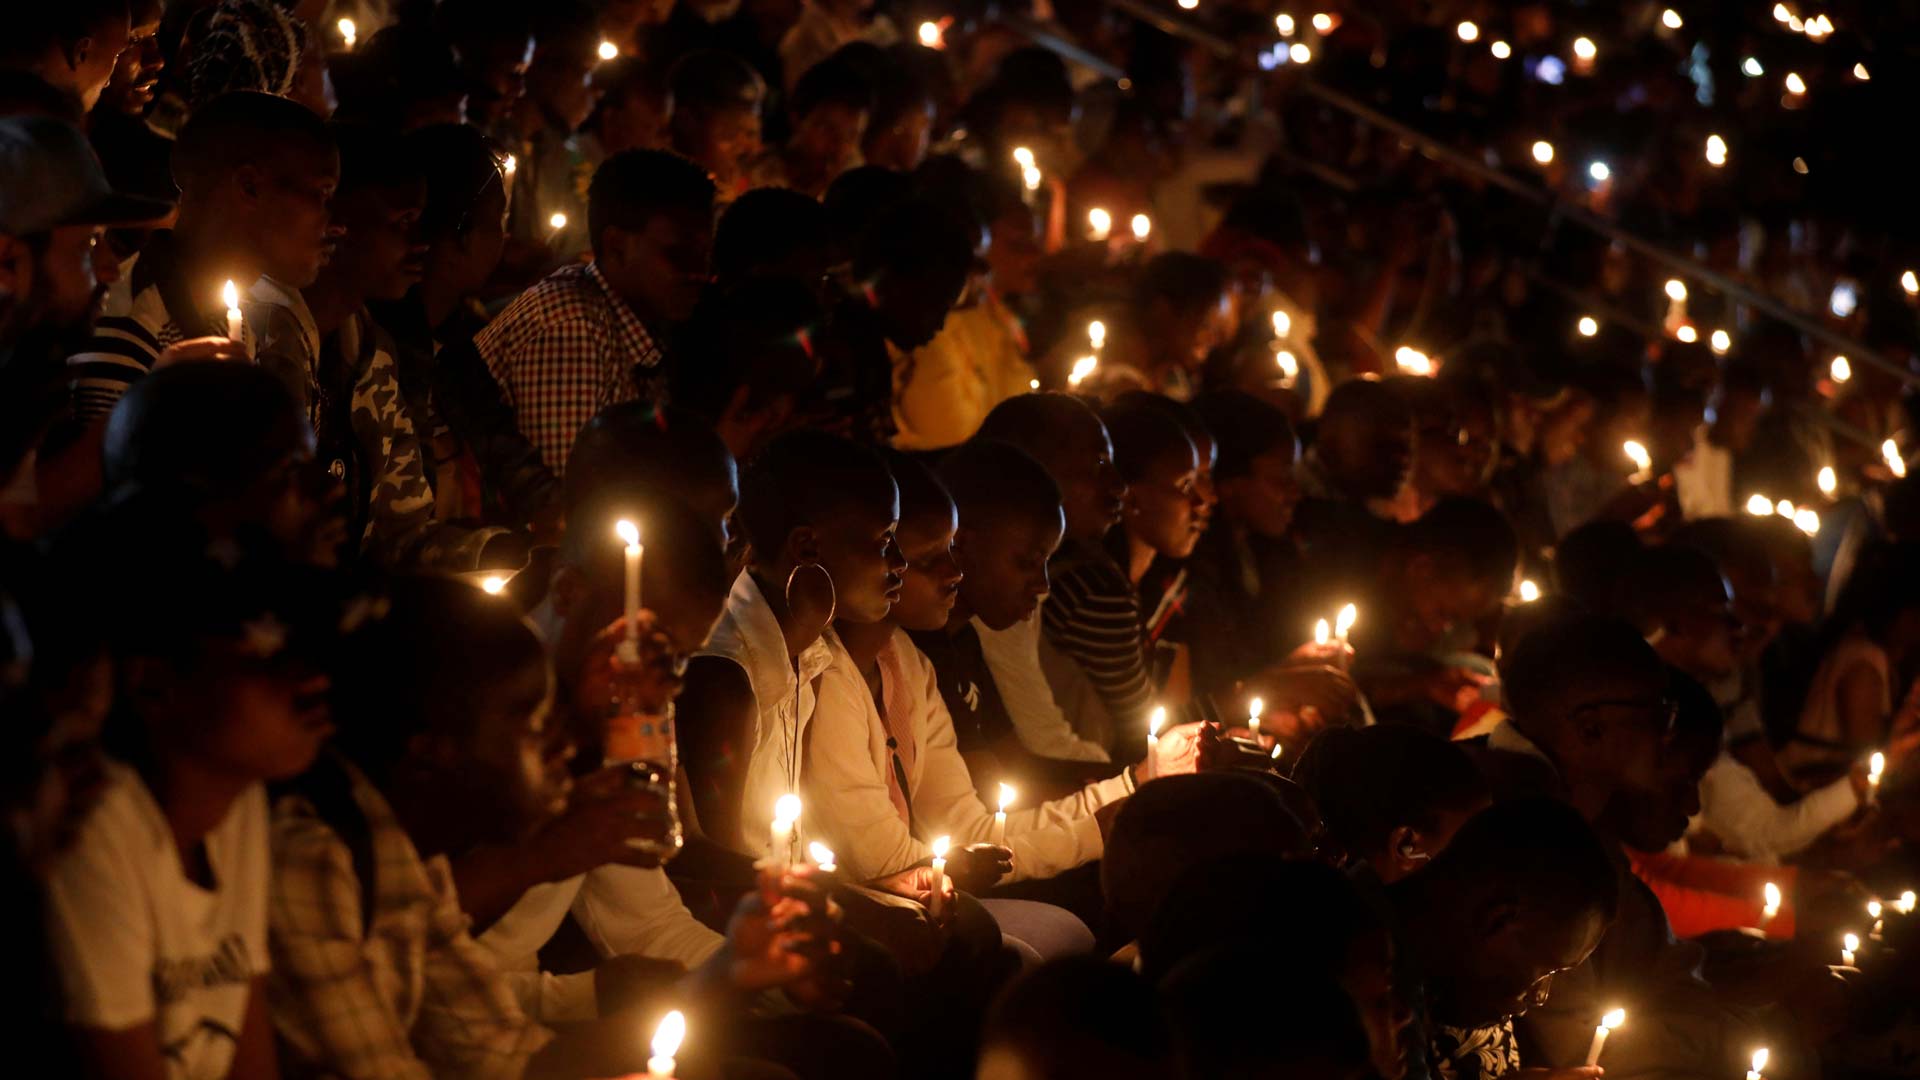 El debate sobre la responsabilidad de los medios en el genocidio de Ruanda sigue abierto